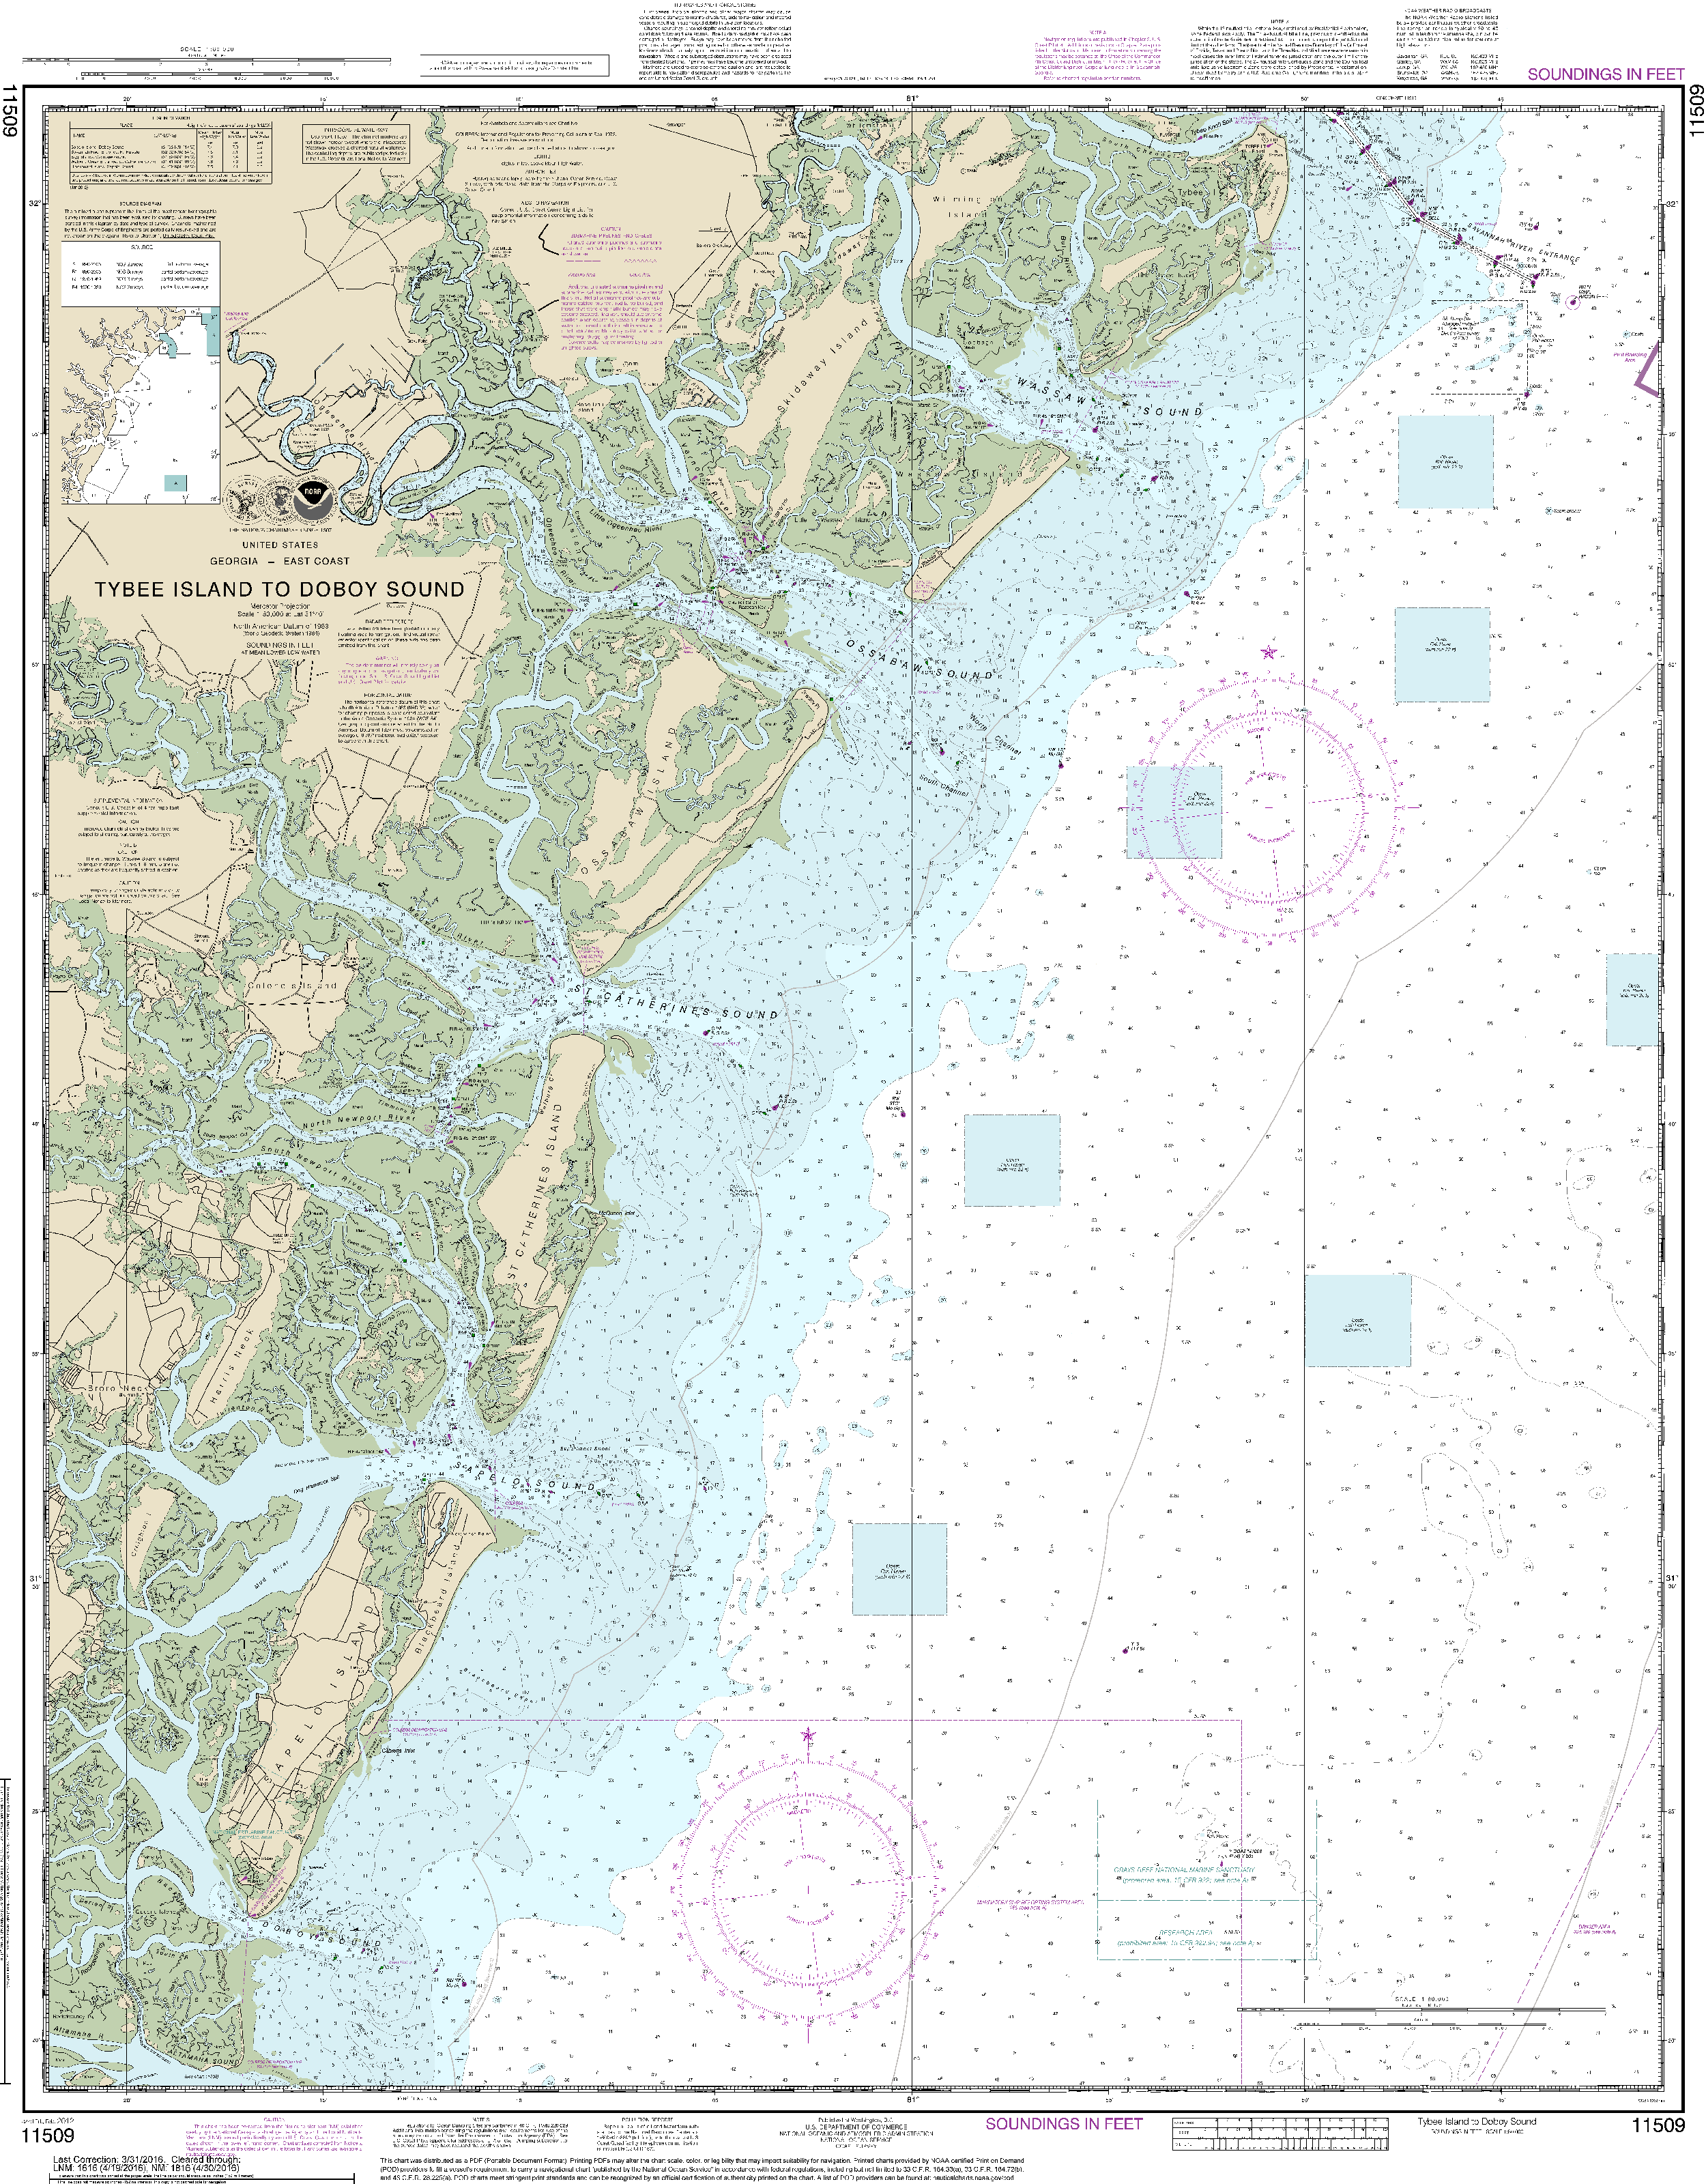 NOAA Nautical Chart 11509: Tybee Island to Doboy Sound